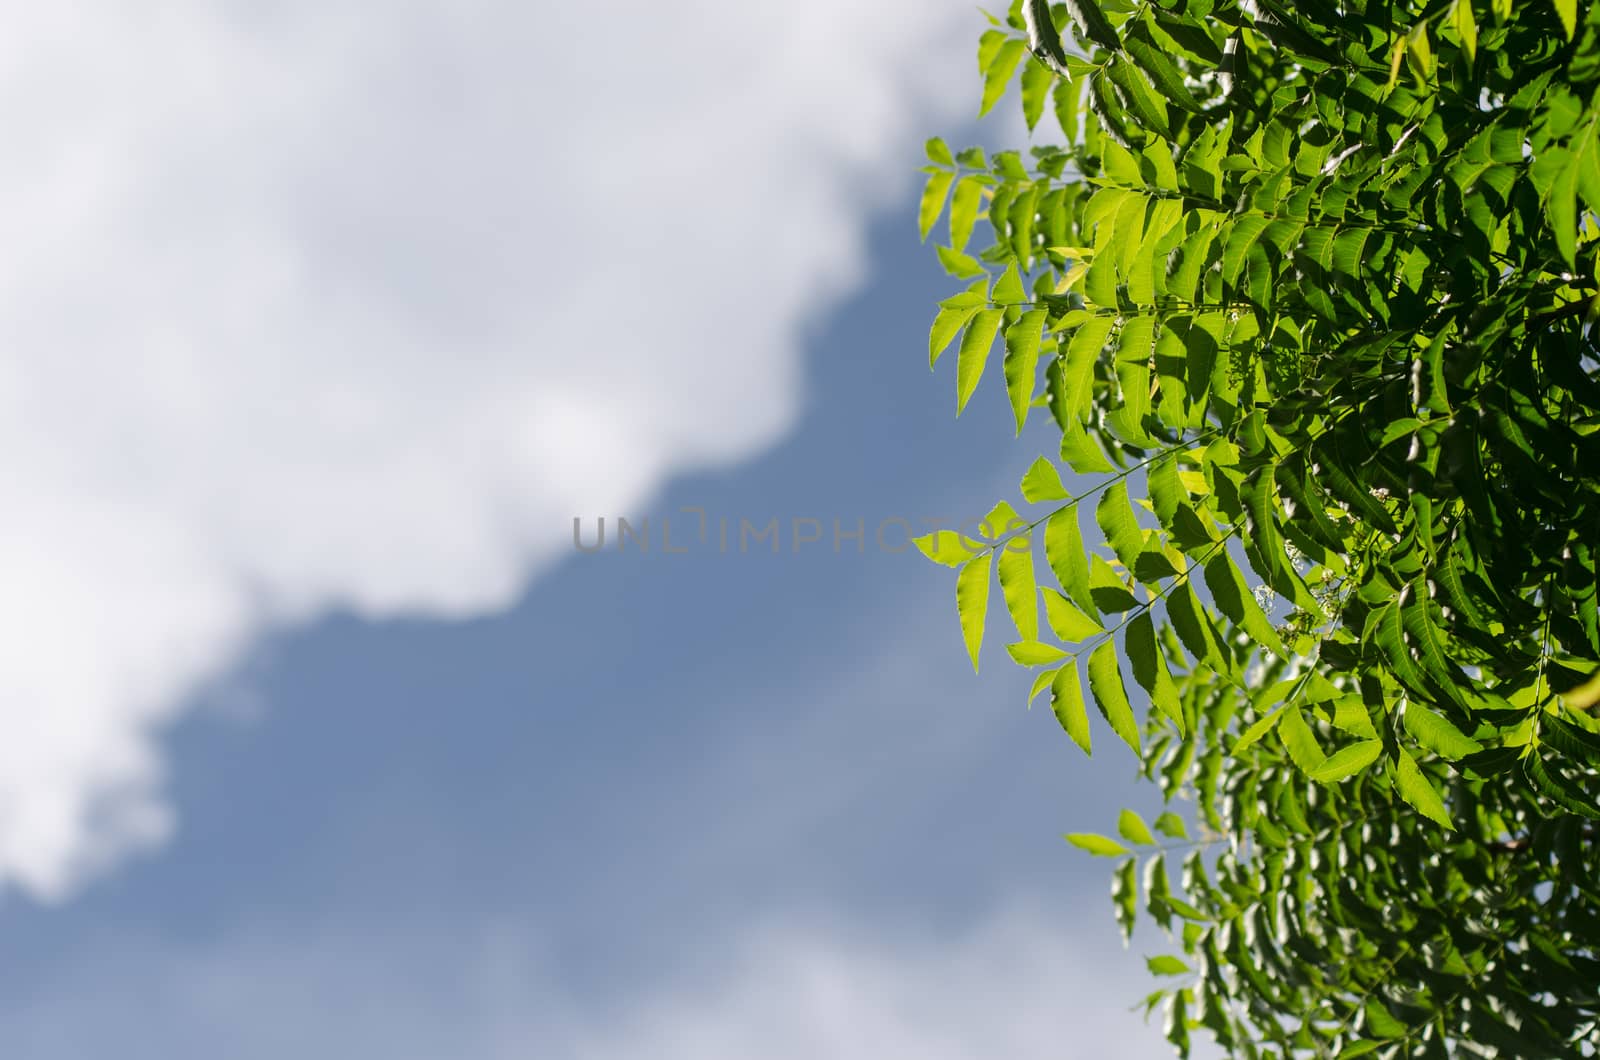 Neem plant with nice sky background by pixbox77